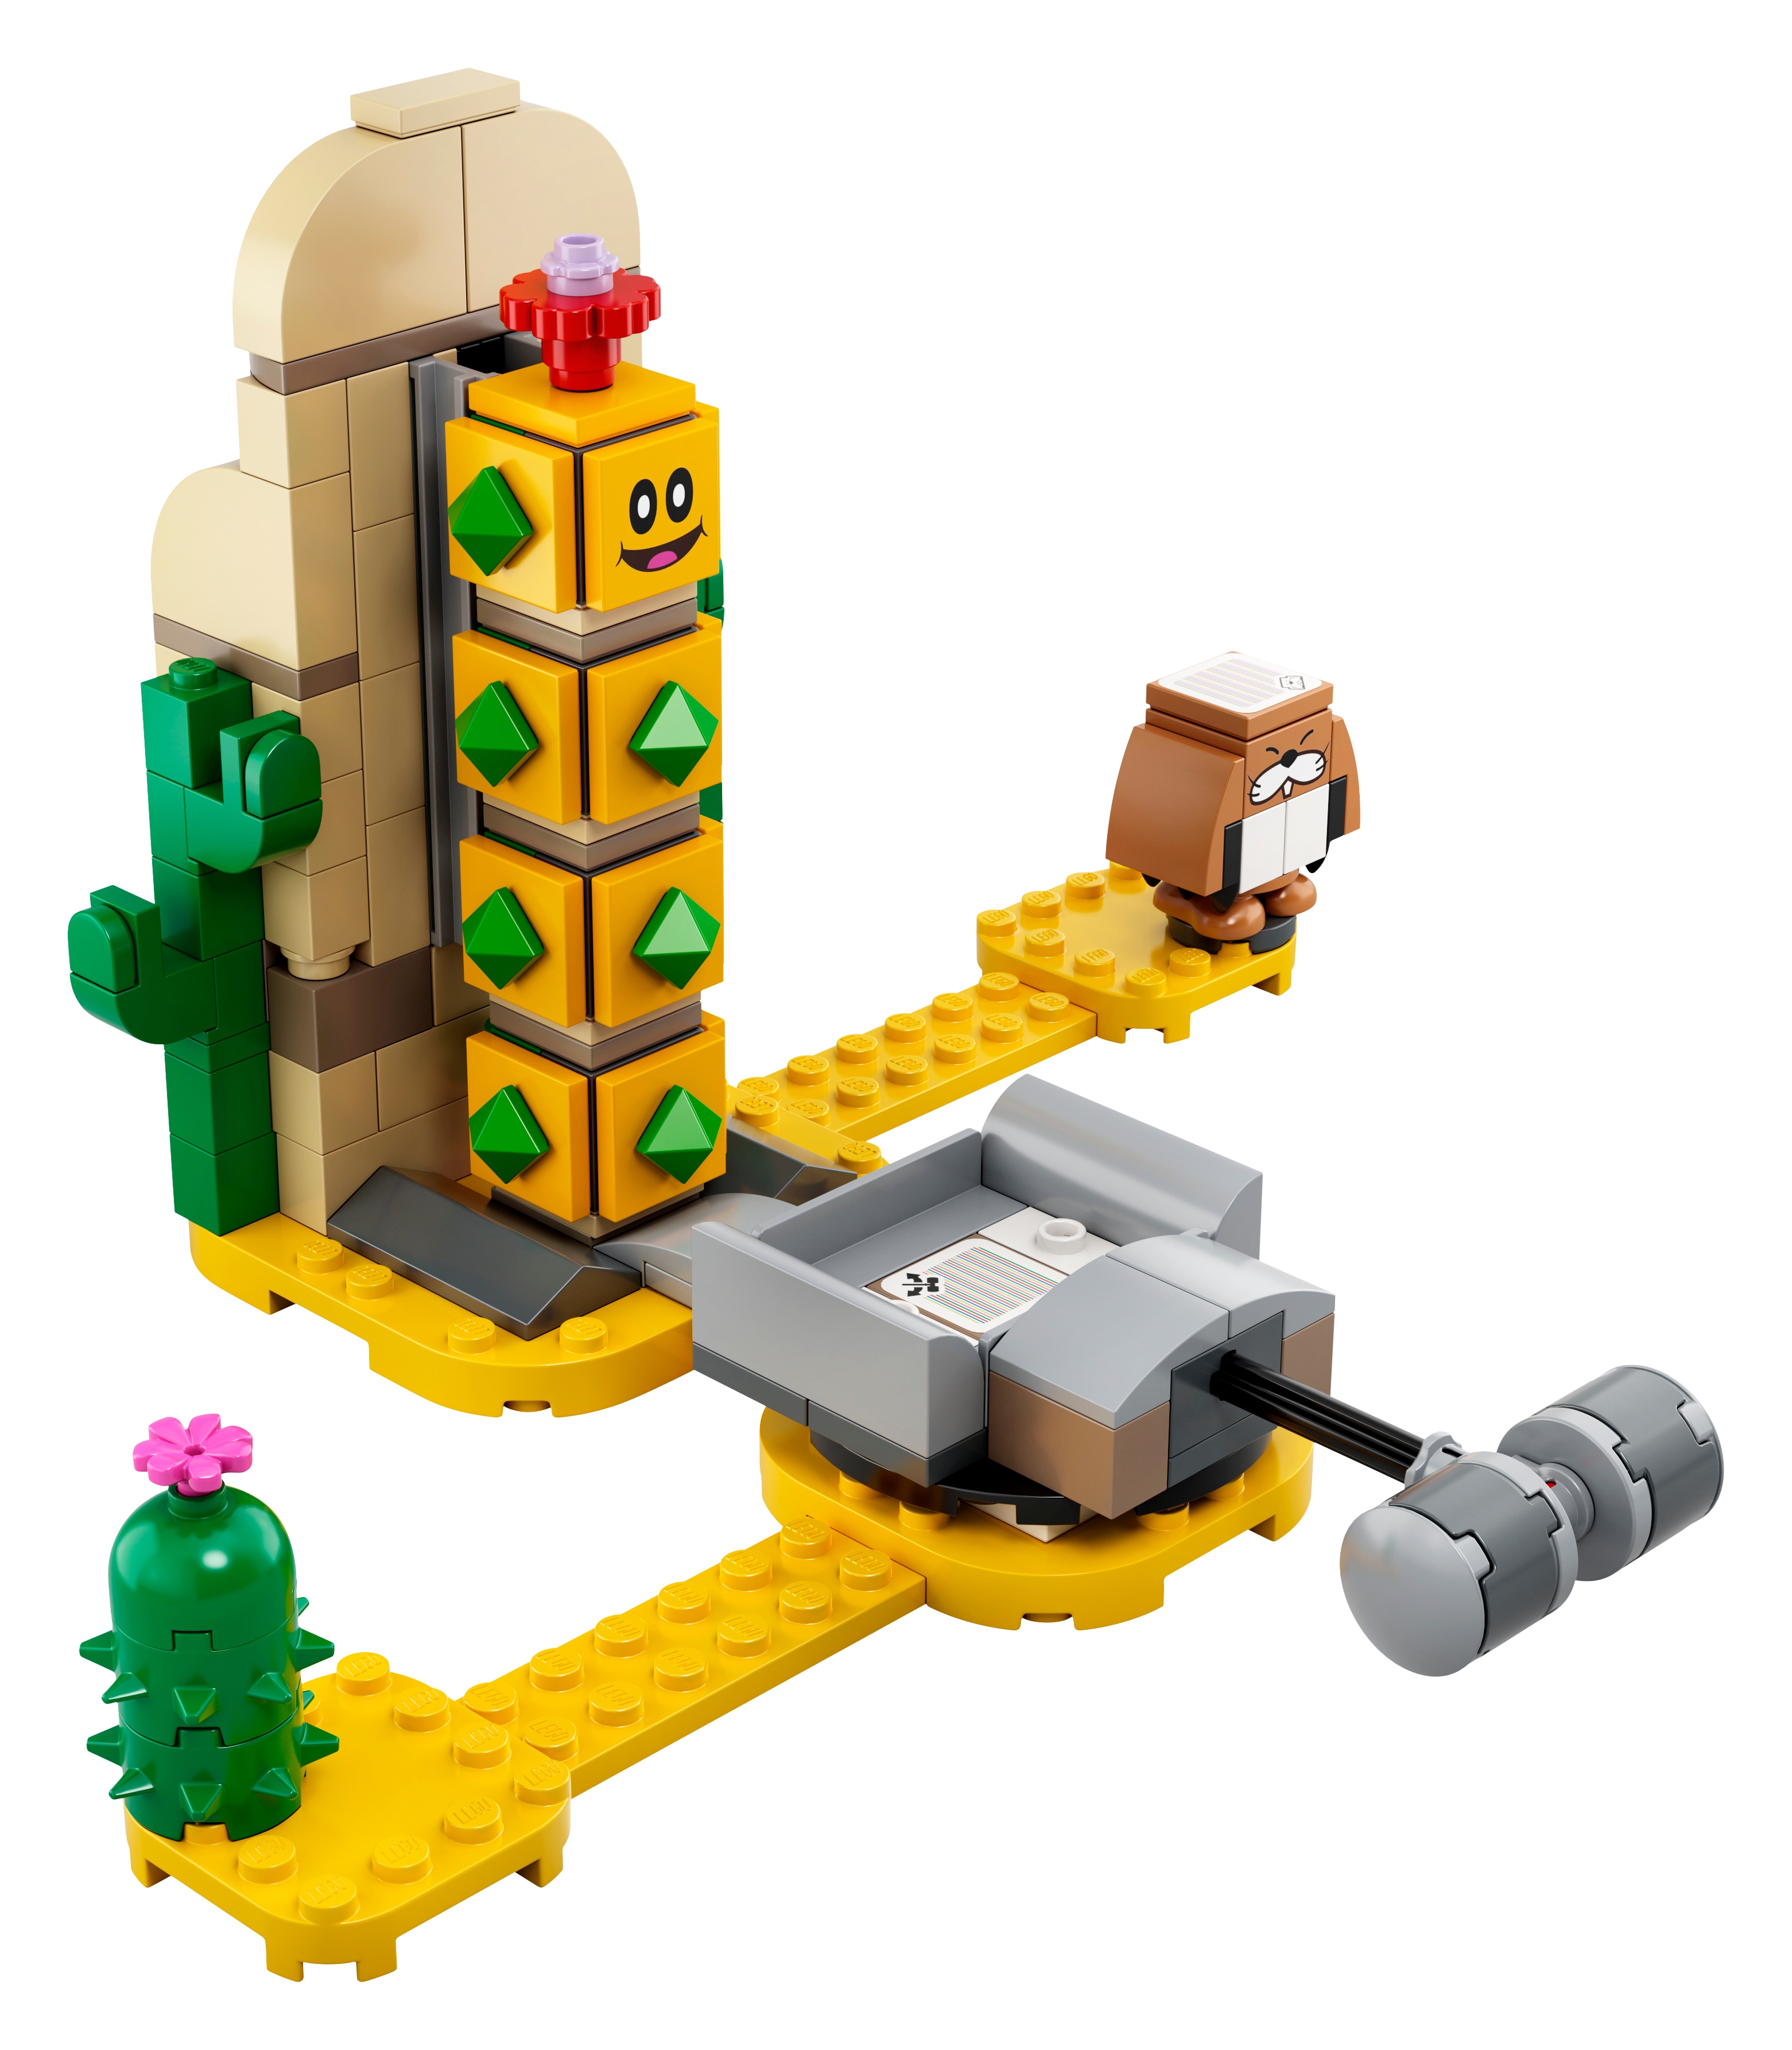 LEGO Super Mario 71363 - Pustynny Pokey - zestaw rozszerzający